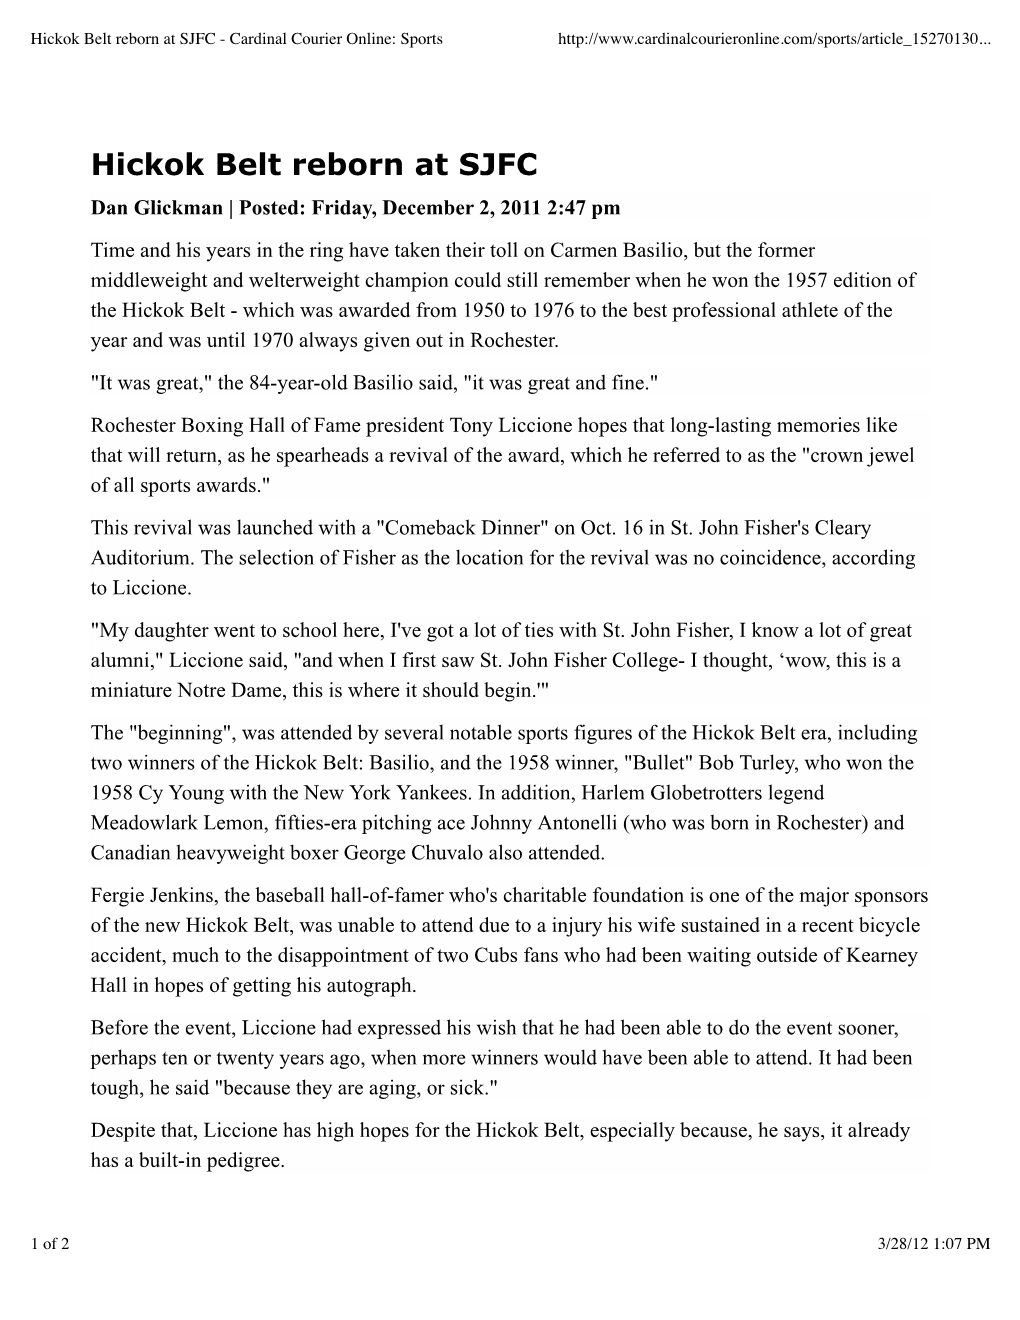 Hickok Belt Reborn at SJFC - Cardinal Courier Online: Sports